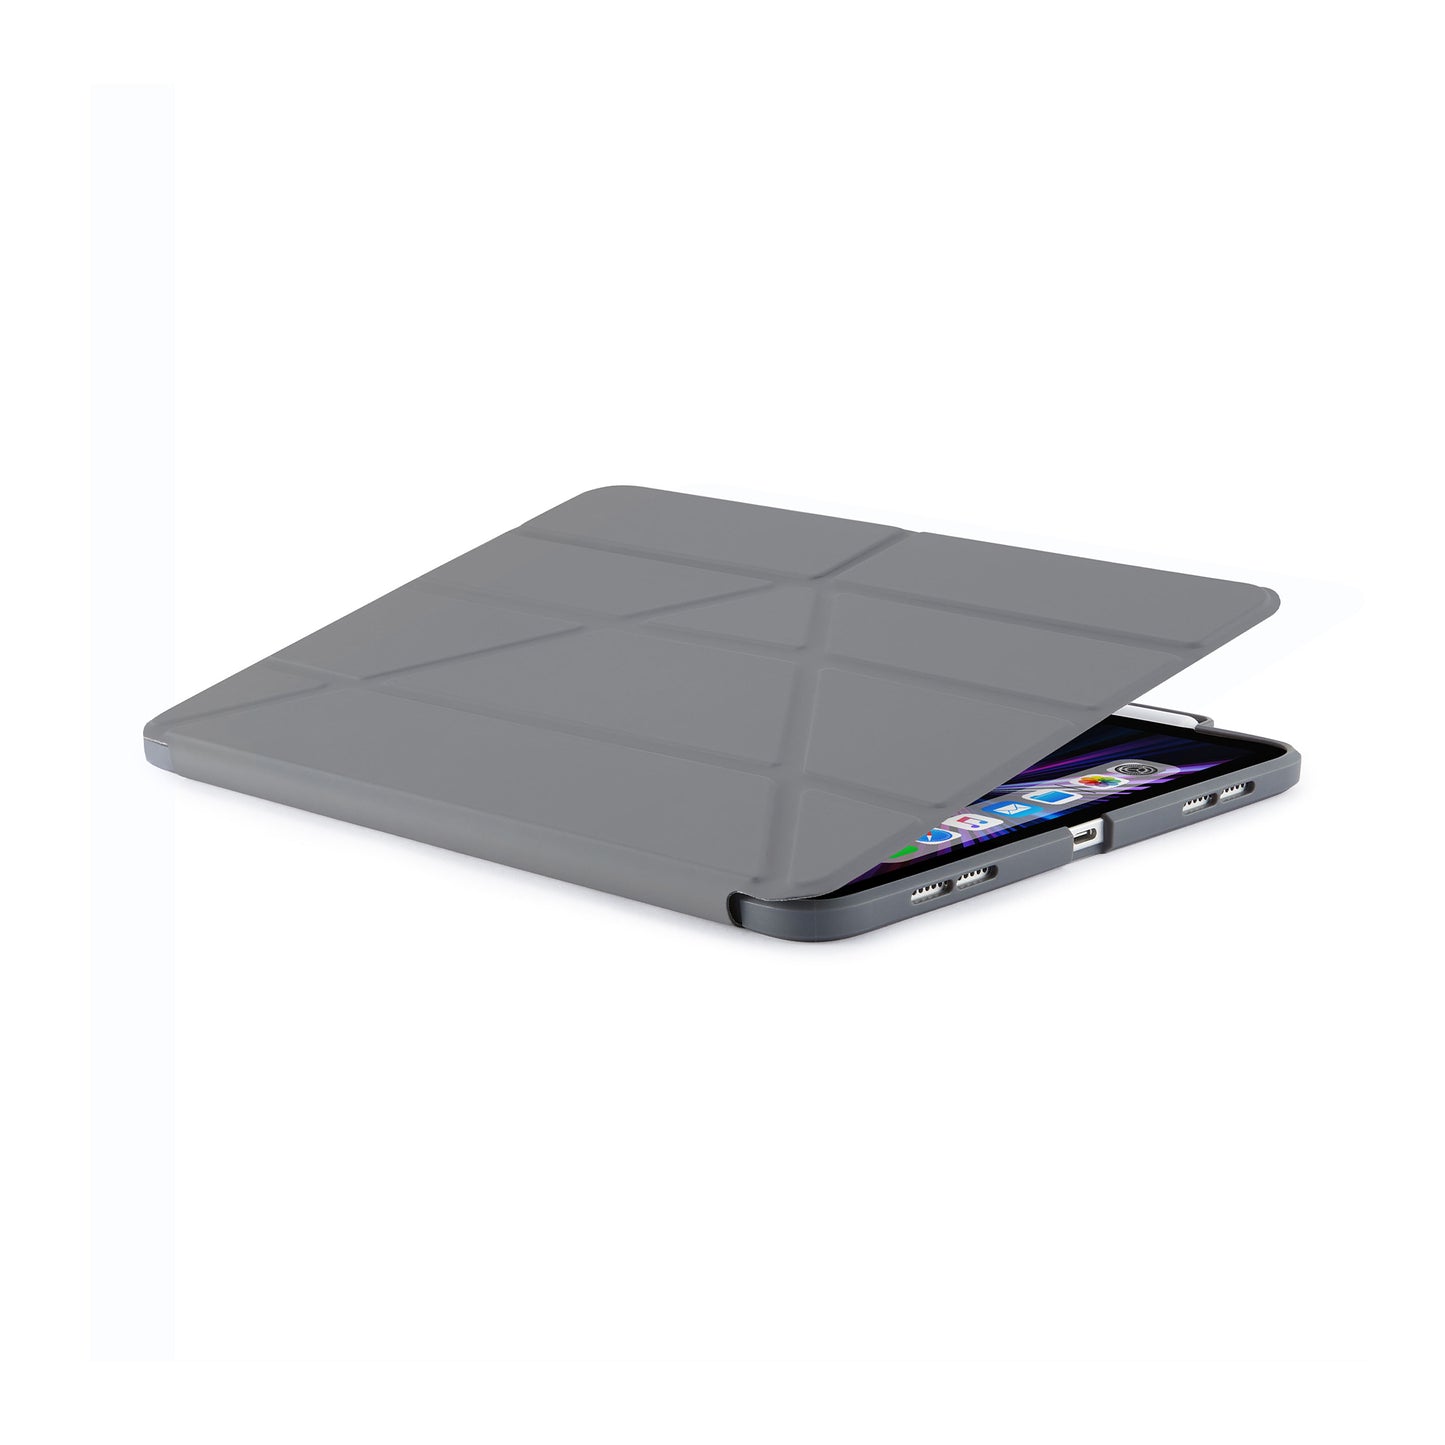 PIPETTO Origami No3 Pencil Case for iPad Pro 11 1st-4th Gen (2018-2022) - Dark Grey